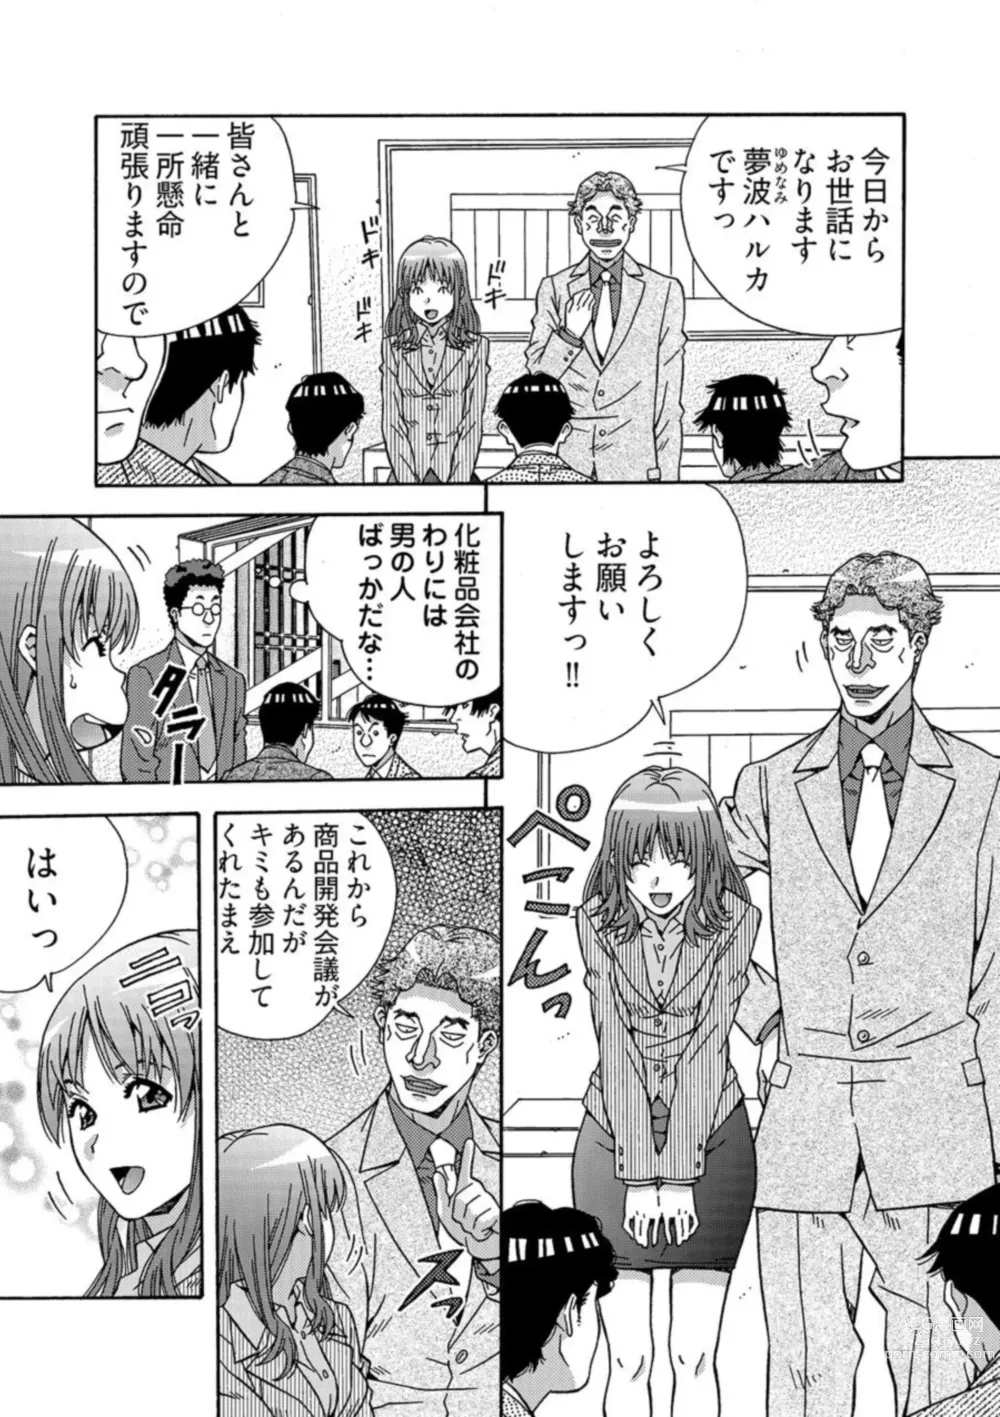 Page 7 of manga Otona no Omochaya-san - Shinjin OL no Nikutai Norma Vol. 1